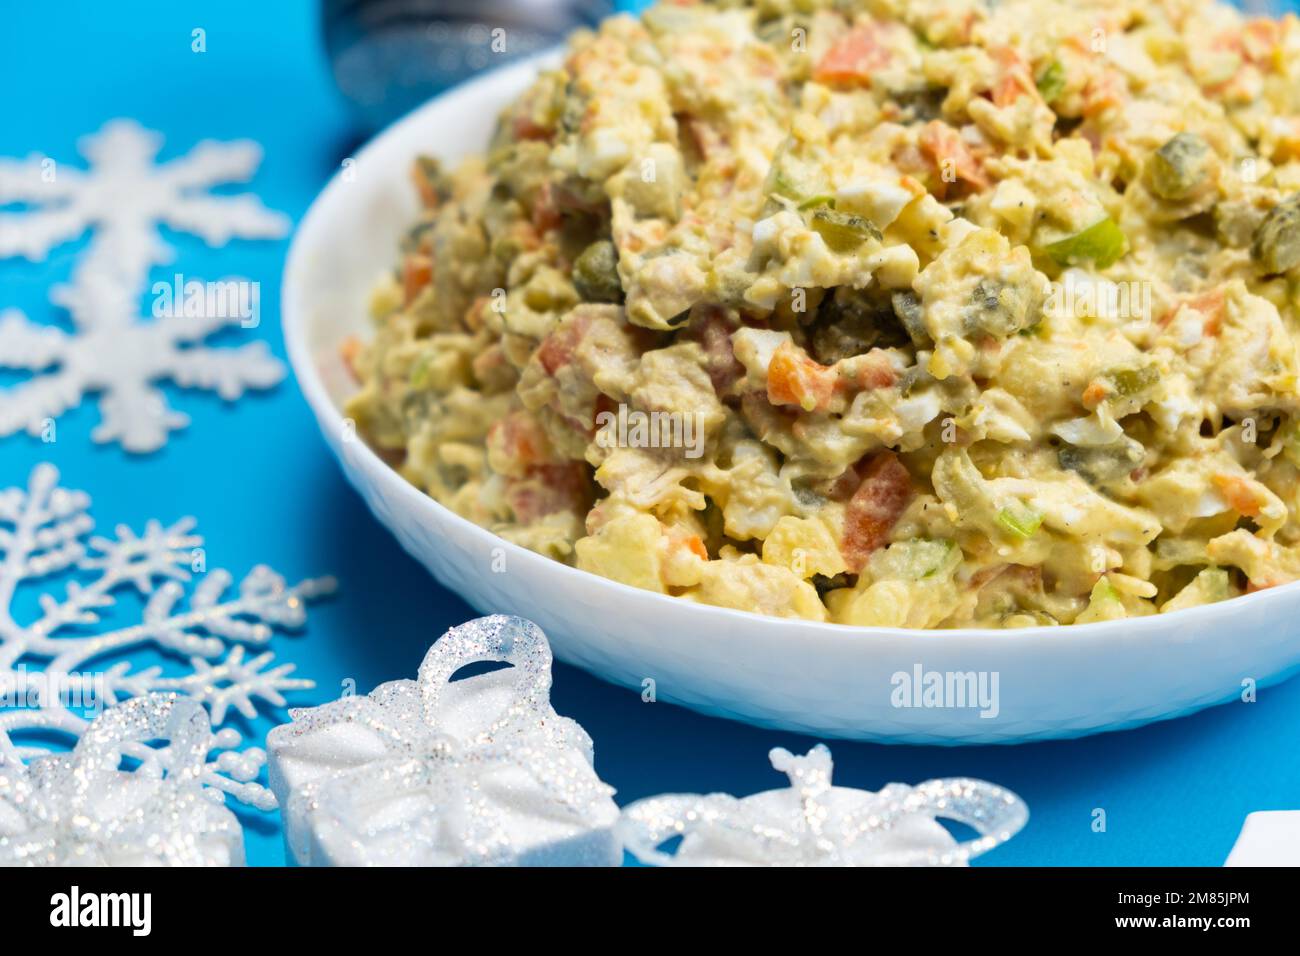 Salade russe Olivier, repas de Noël et du nouvel an, fond bleu, vue de dessus. Banque D'Images